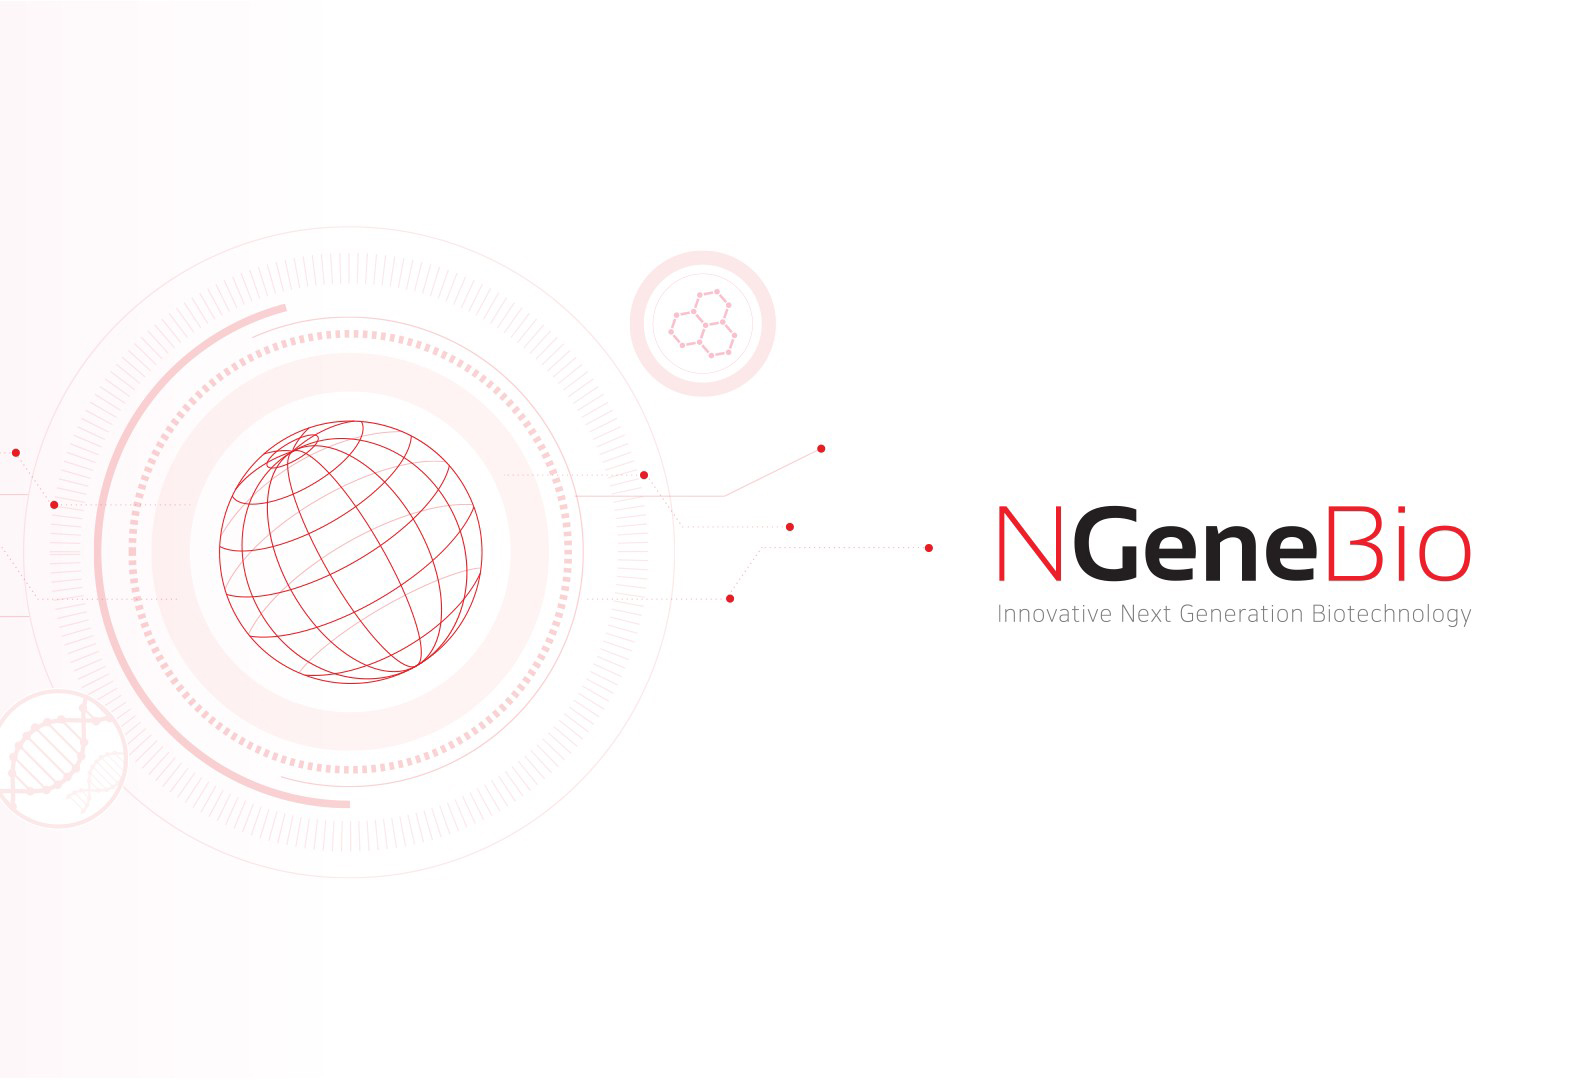 Biomedic chính thức trở thành nhà phân phối của NgeneBio từ tháng 6/2020